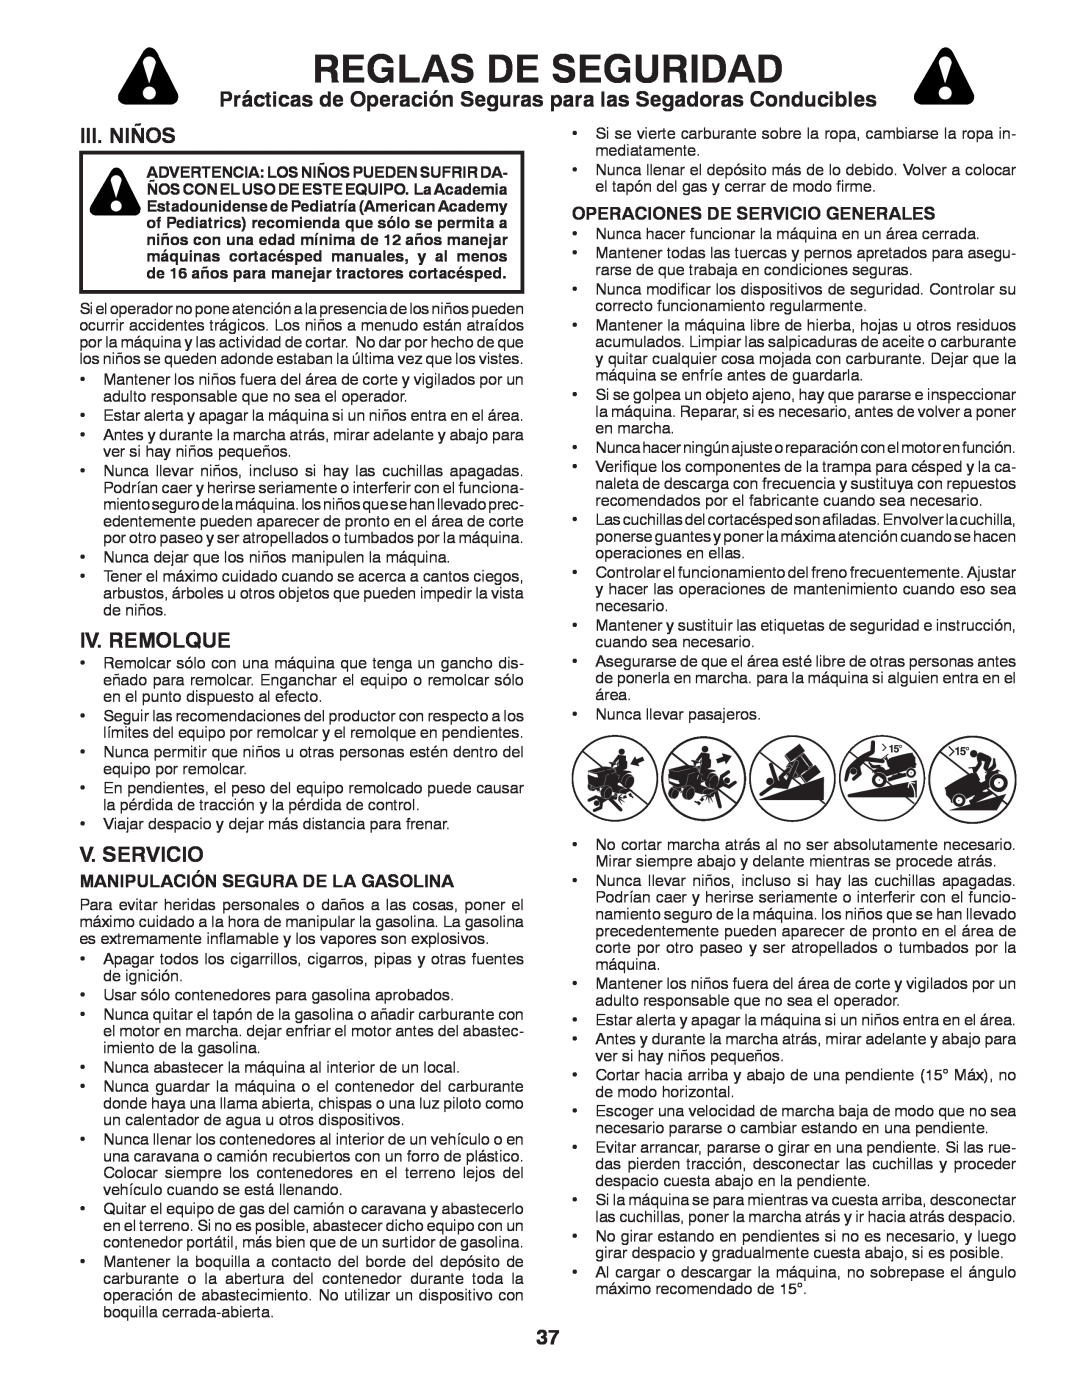 Husqvarna GT48XLSi warranty Iii. Niños, Iv. Remolque, V. Servicio, Reglas De Seguridad, Manipulación Segura De La Gasolina 